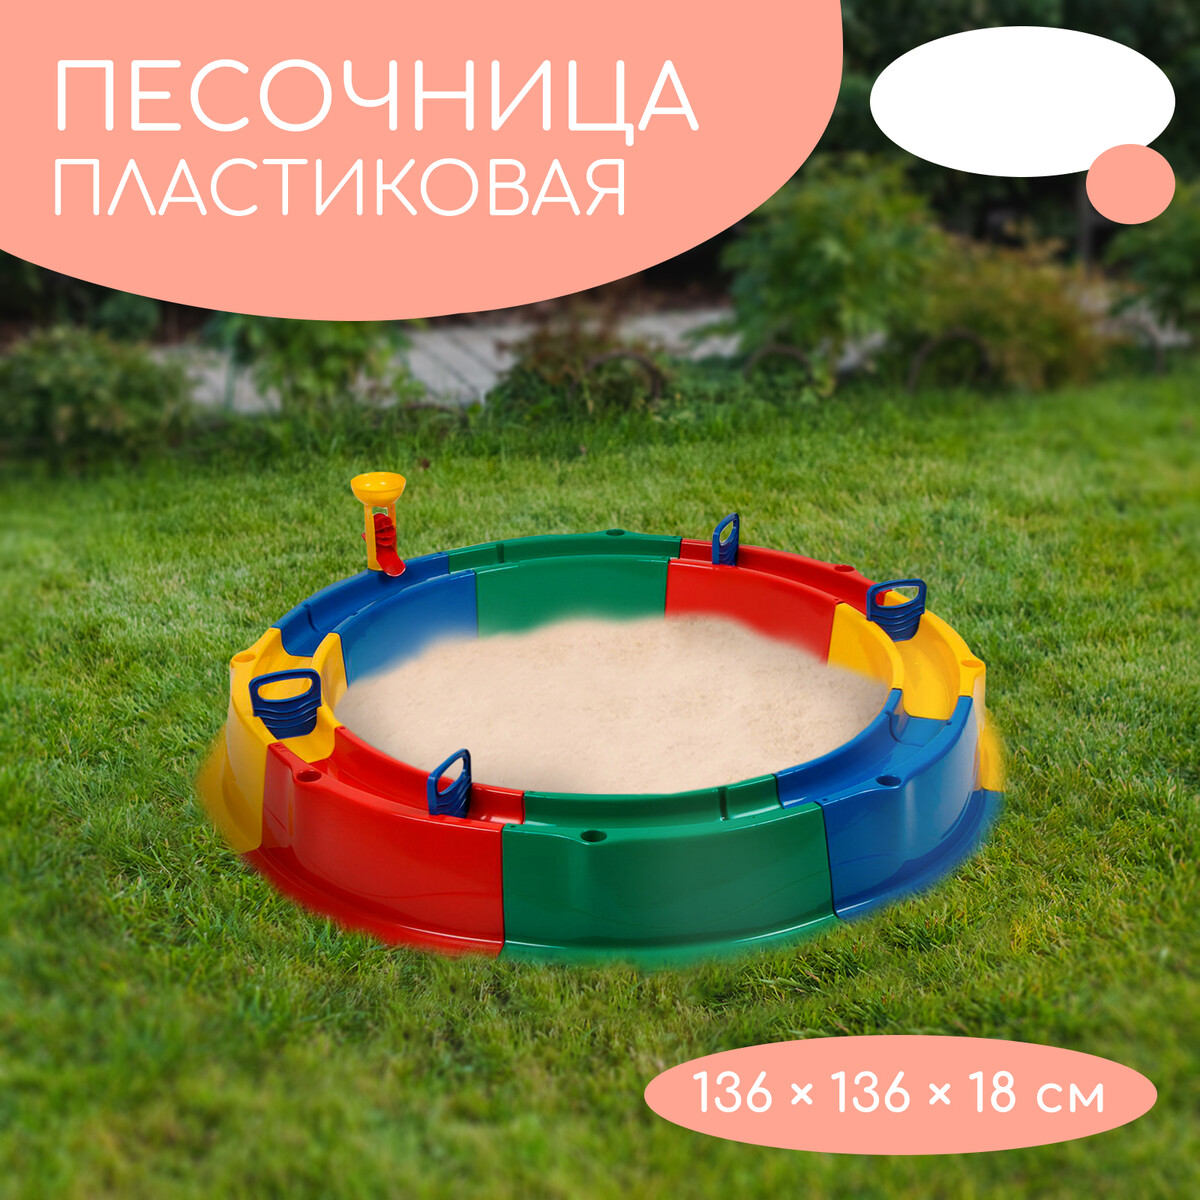 Песочница детская пластиковая, 136 × 136 × 18 см, с набором для игр, каталка falk строитель с прицепом и набором для песка